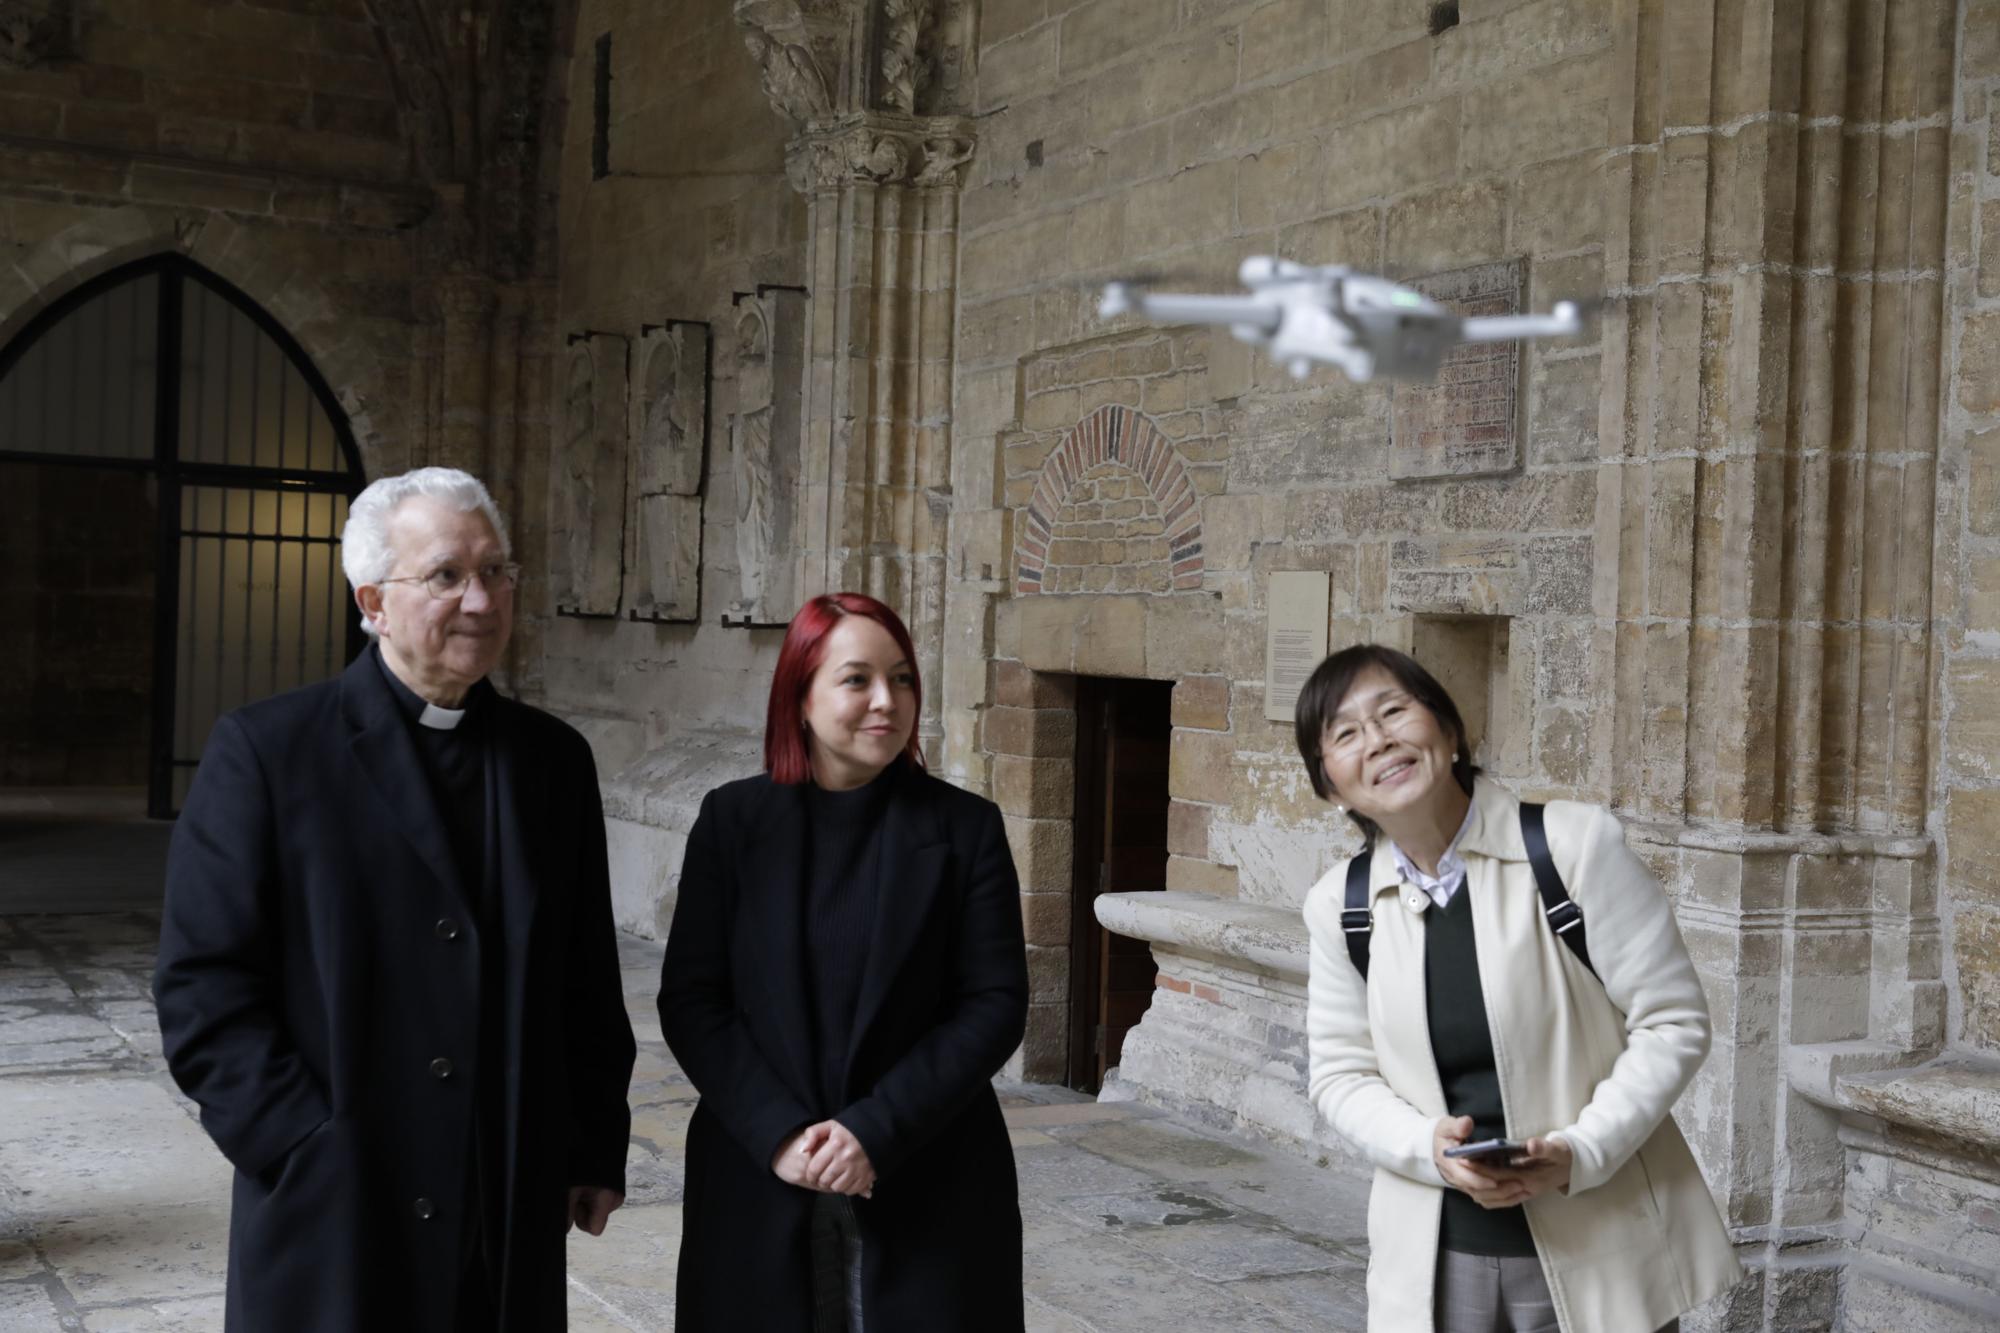 Drones volando en la Catedral de Oviedo: Iñaki Terán graba vídeos inéditos en el templo